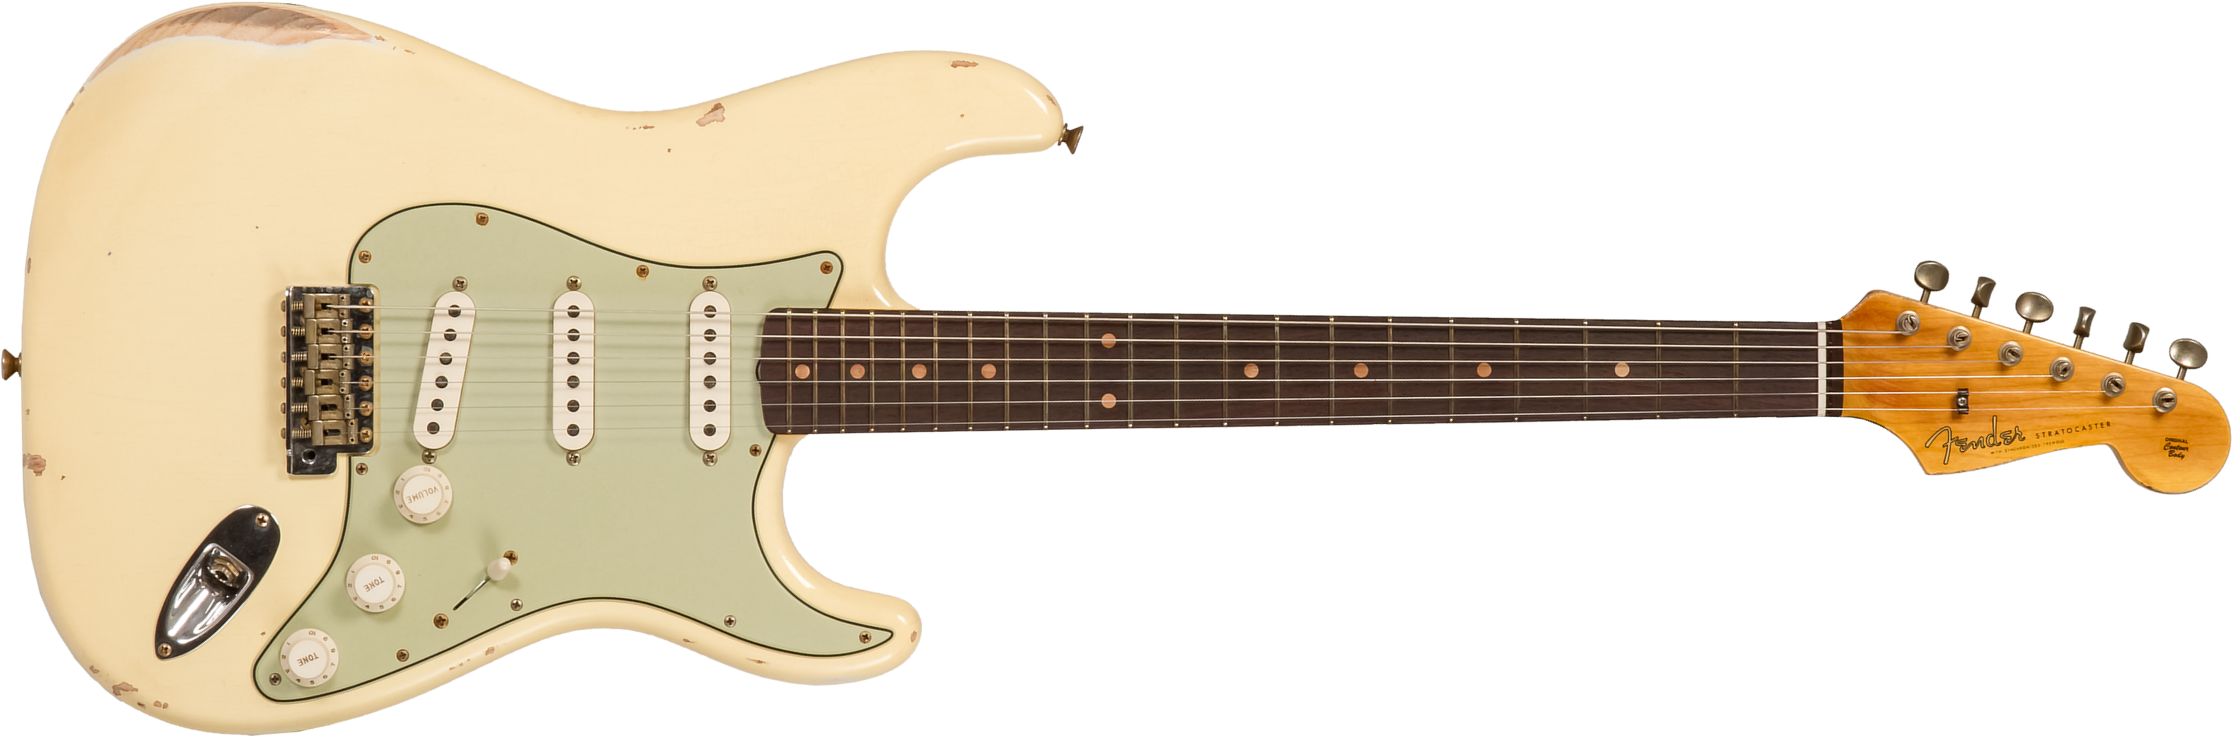 Fender Custom Shop Strat 1959 3s Trem Rw #r133842 - Relic Antique Vintage White - Elektrische gitaar in Str-vorm - Main picture